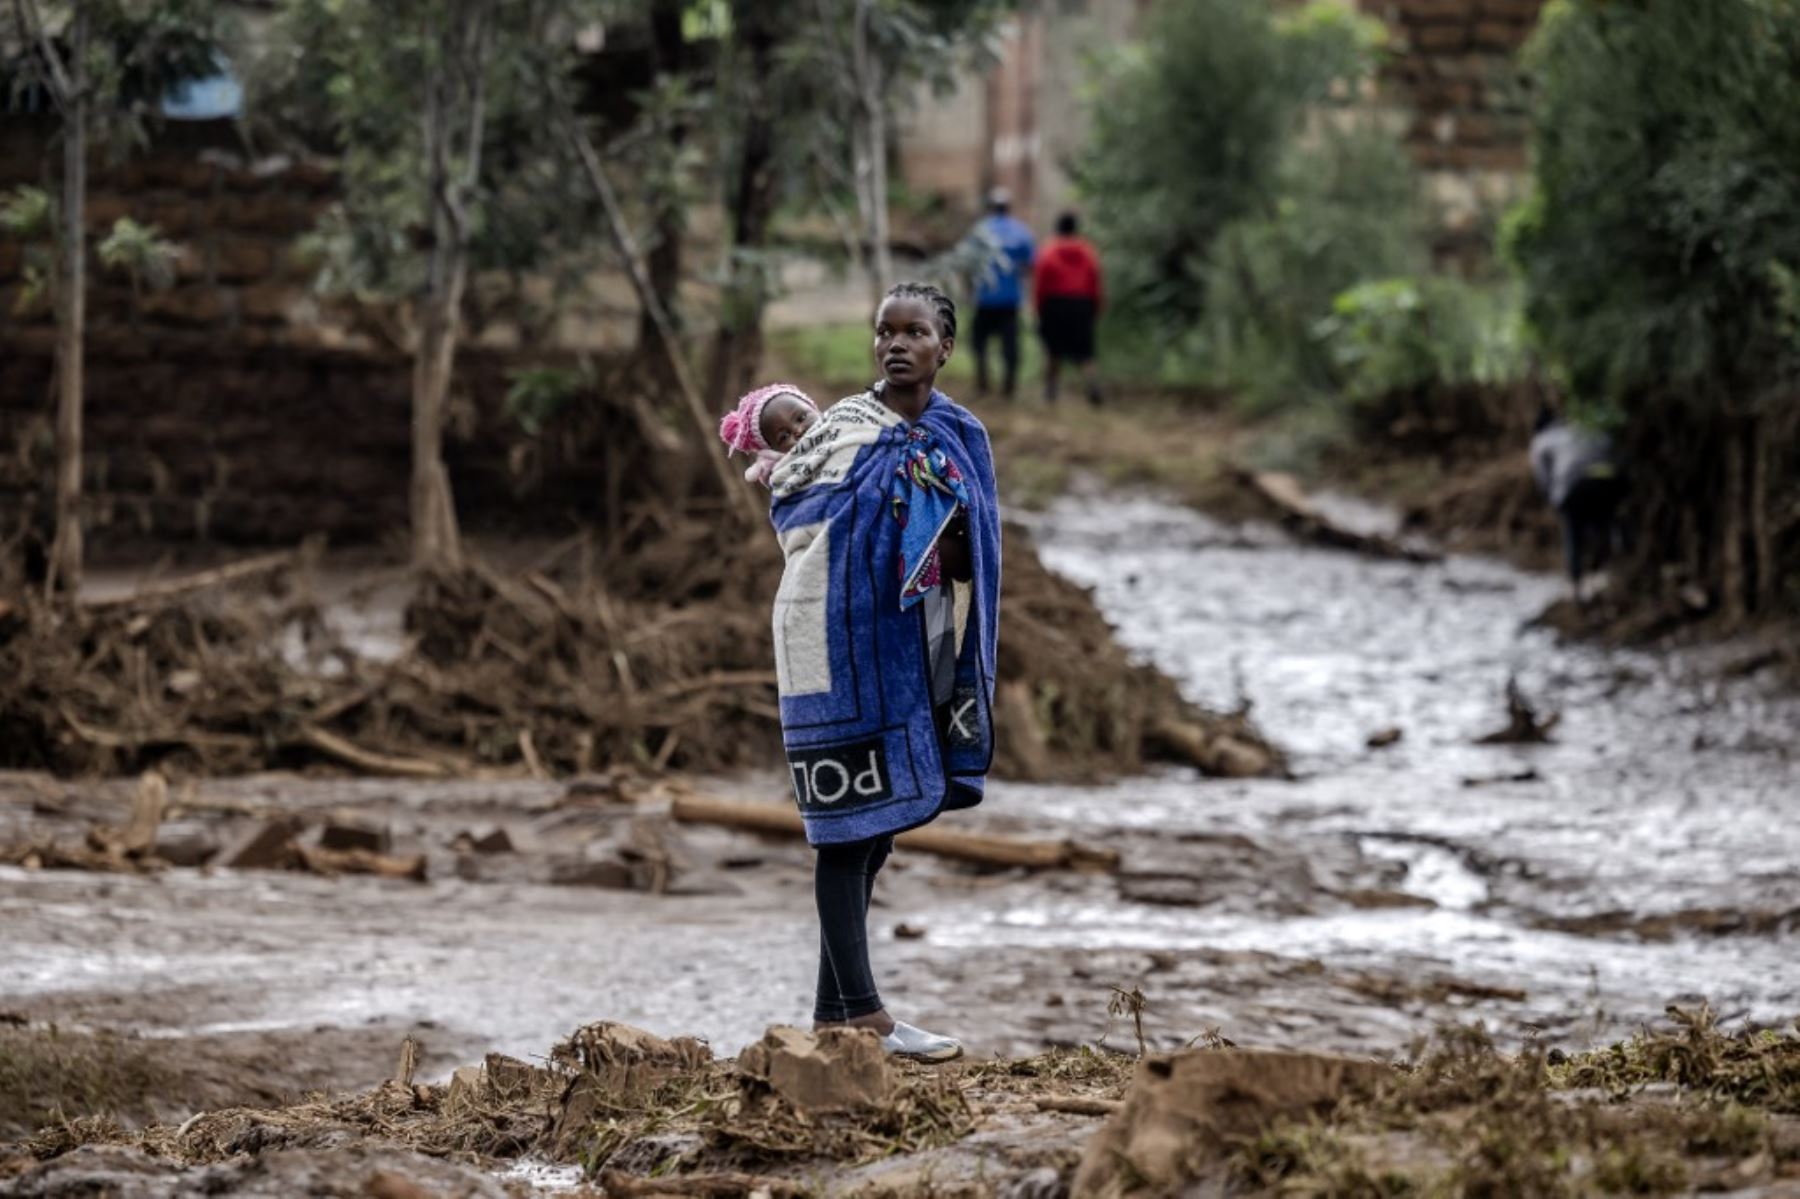 Sin contar este incidente, 76 personas han perdido la vida en Kenia desde marzo debido a las lluvias más intensas de lo habitual que azotan esta región, agravadas por el fenómeno climático de El Niño. Foto: AFP